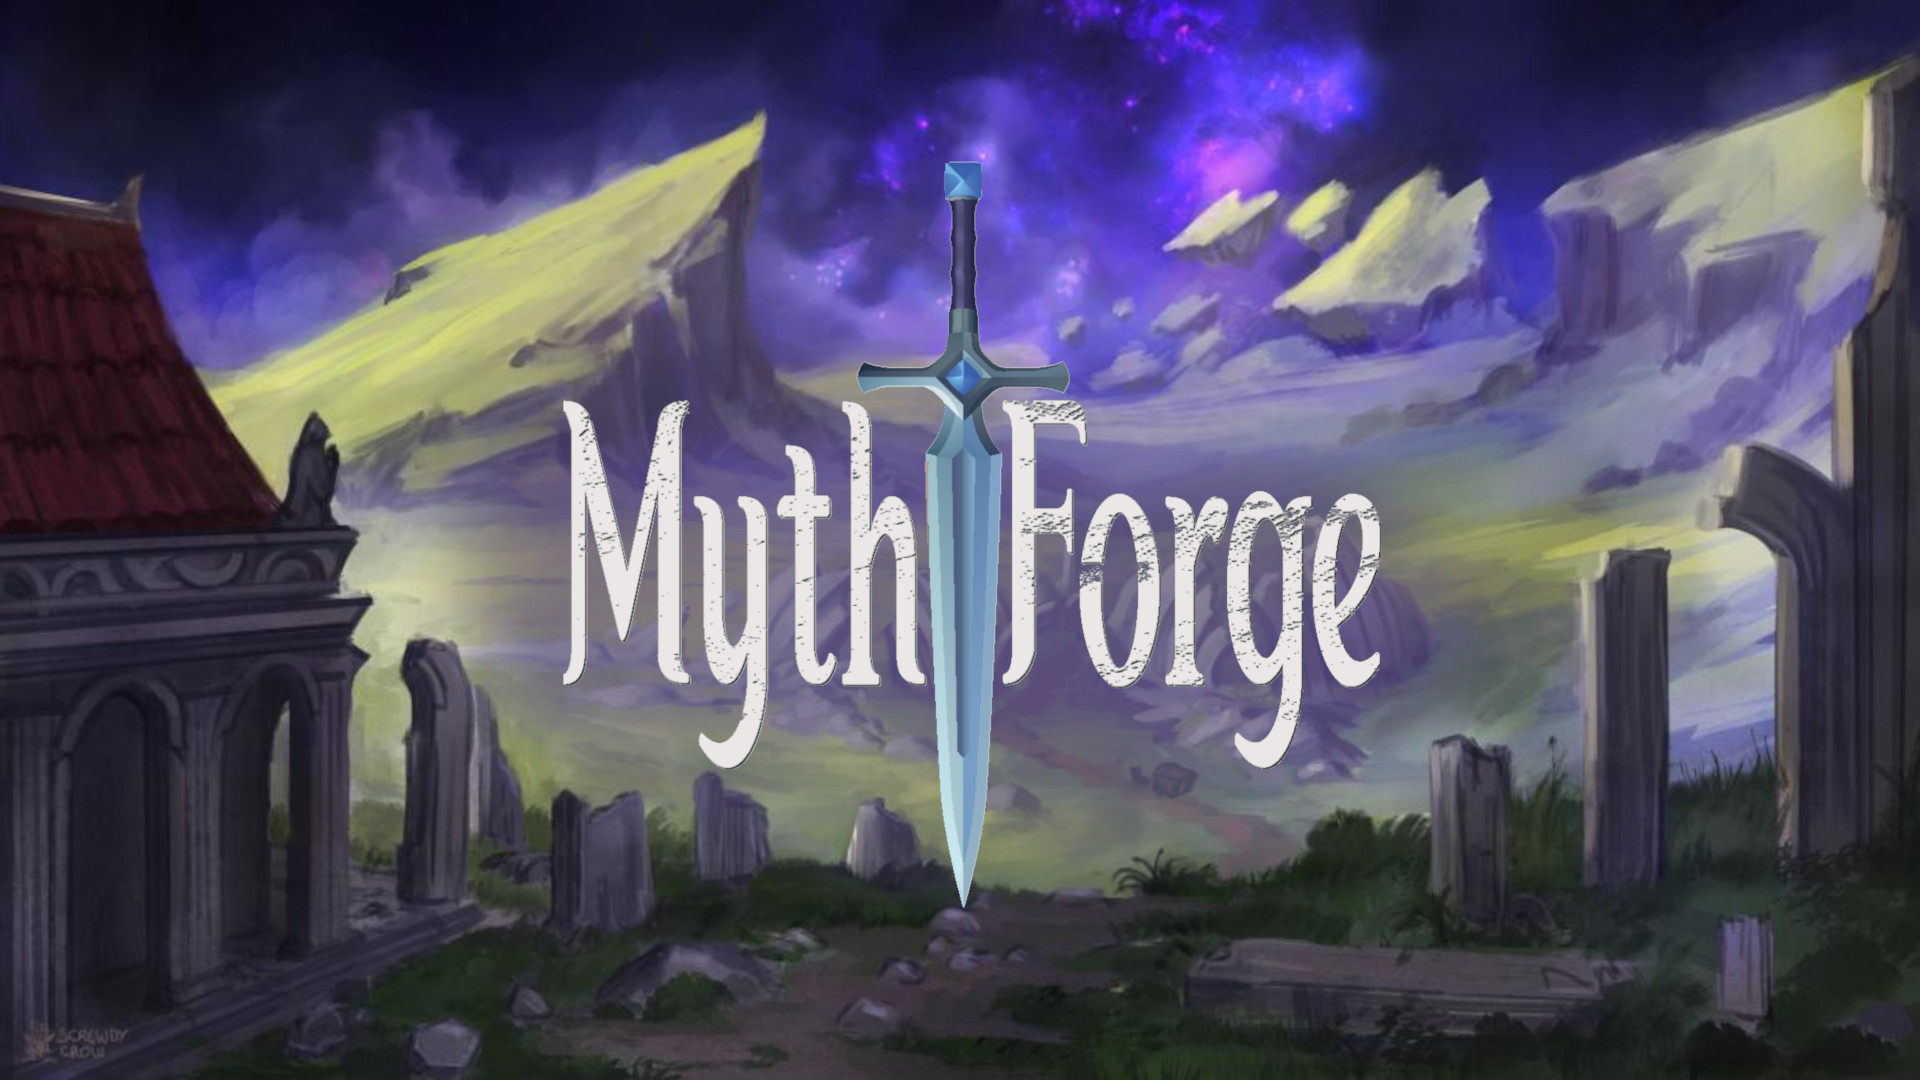 Mythforge